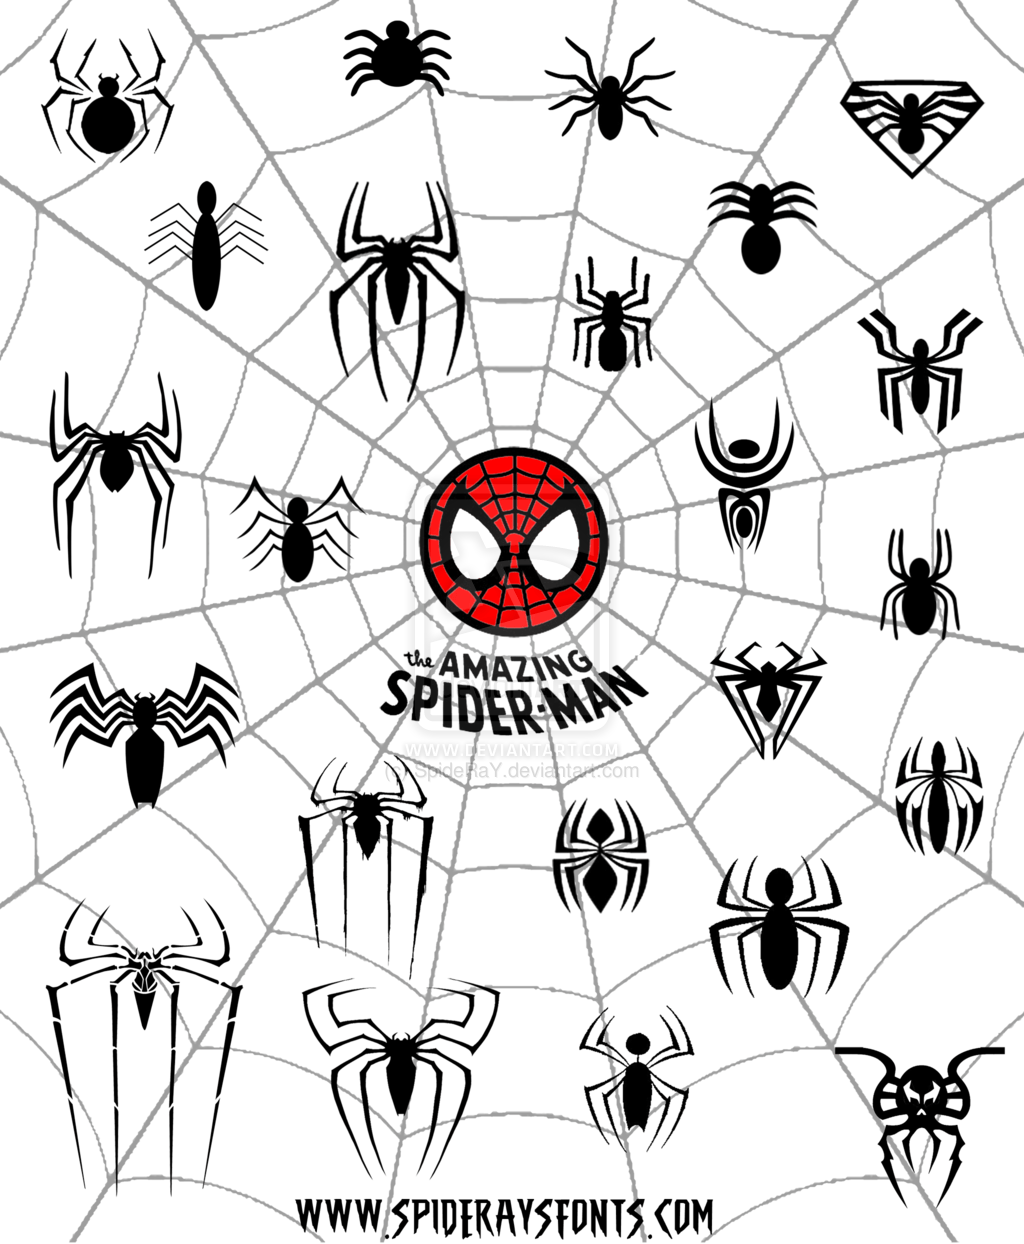 Spider-Man Spider Logo - The Amazing Spider-Man Logo Web by SpideRaY.deviantart.com on ...